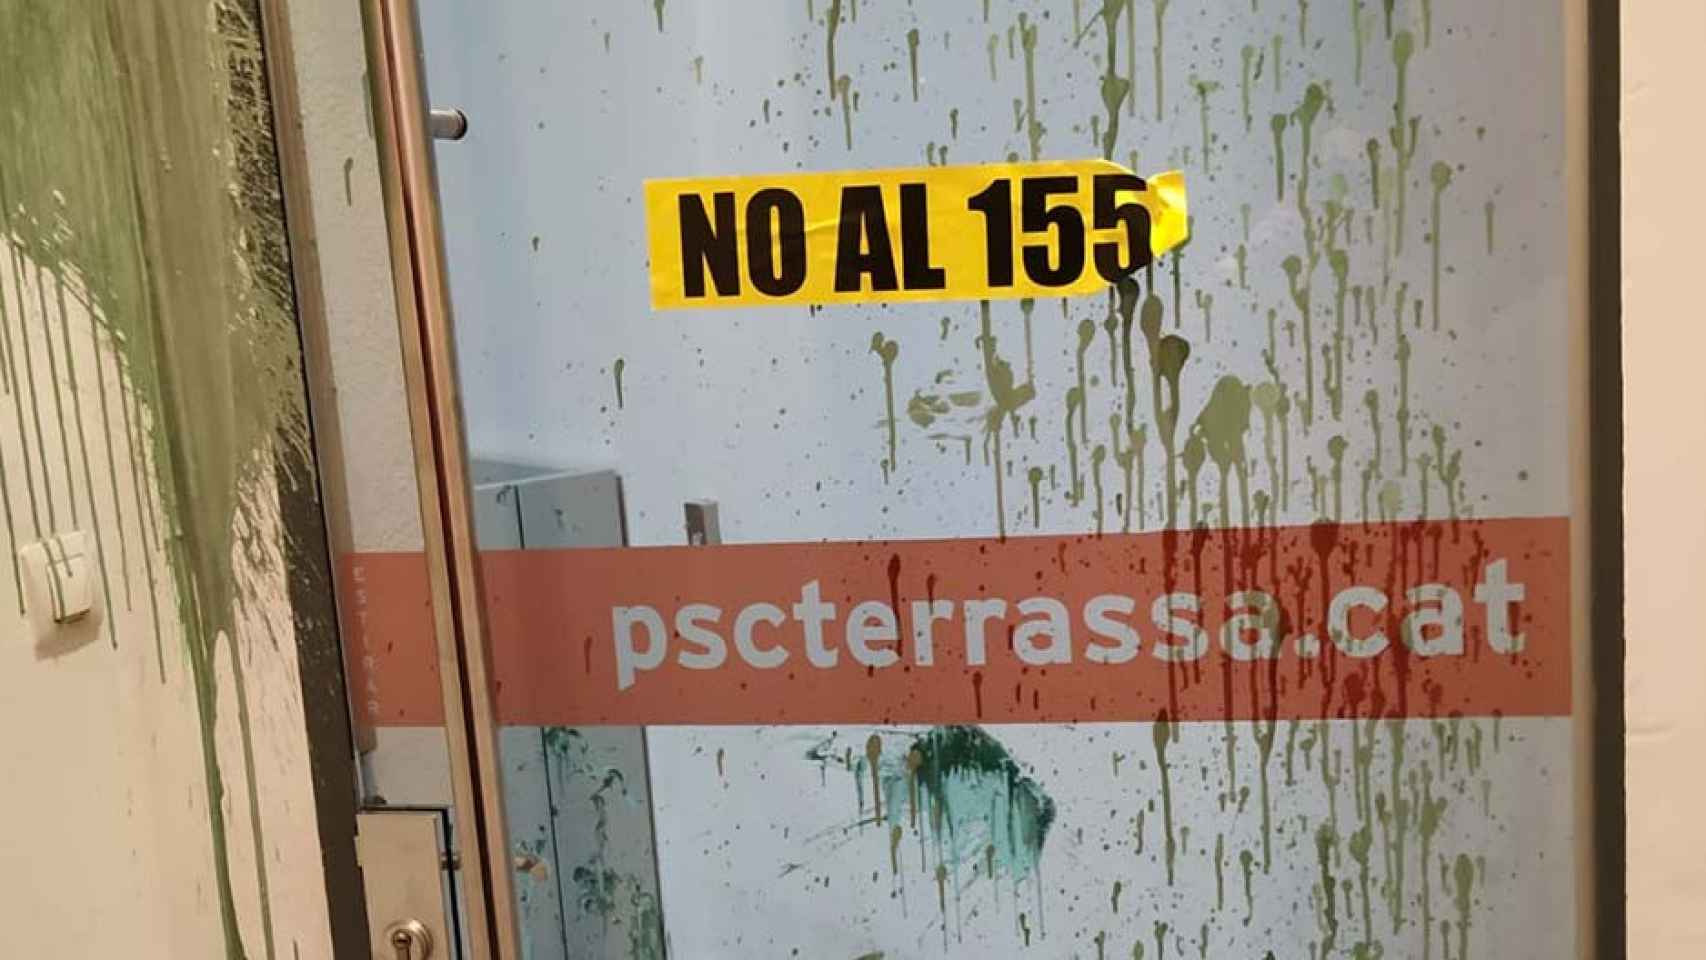 Ataque a la sede del PSC de Terrassa / @PSCTerrassa